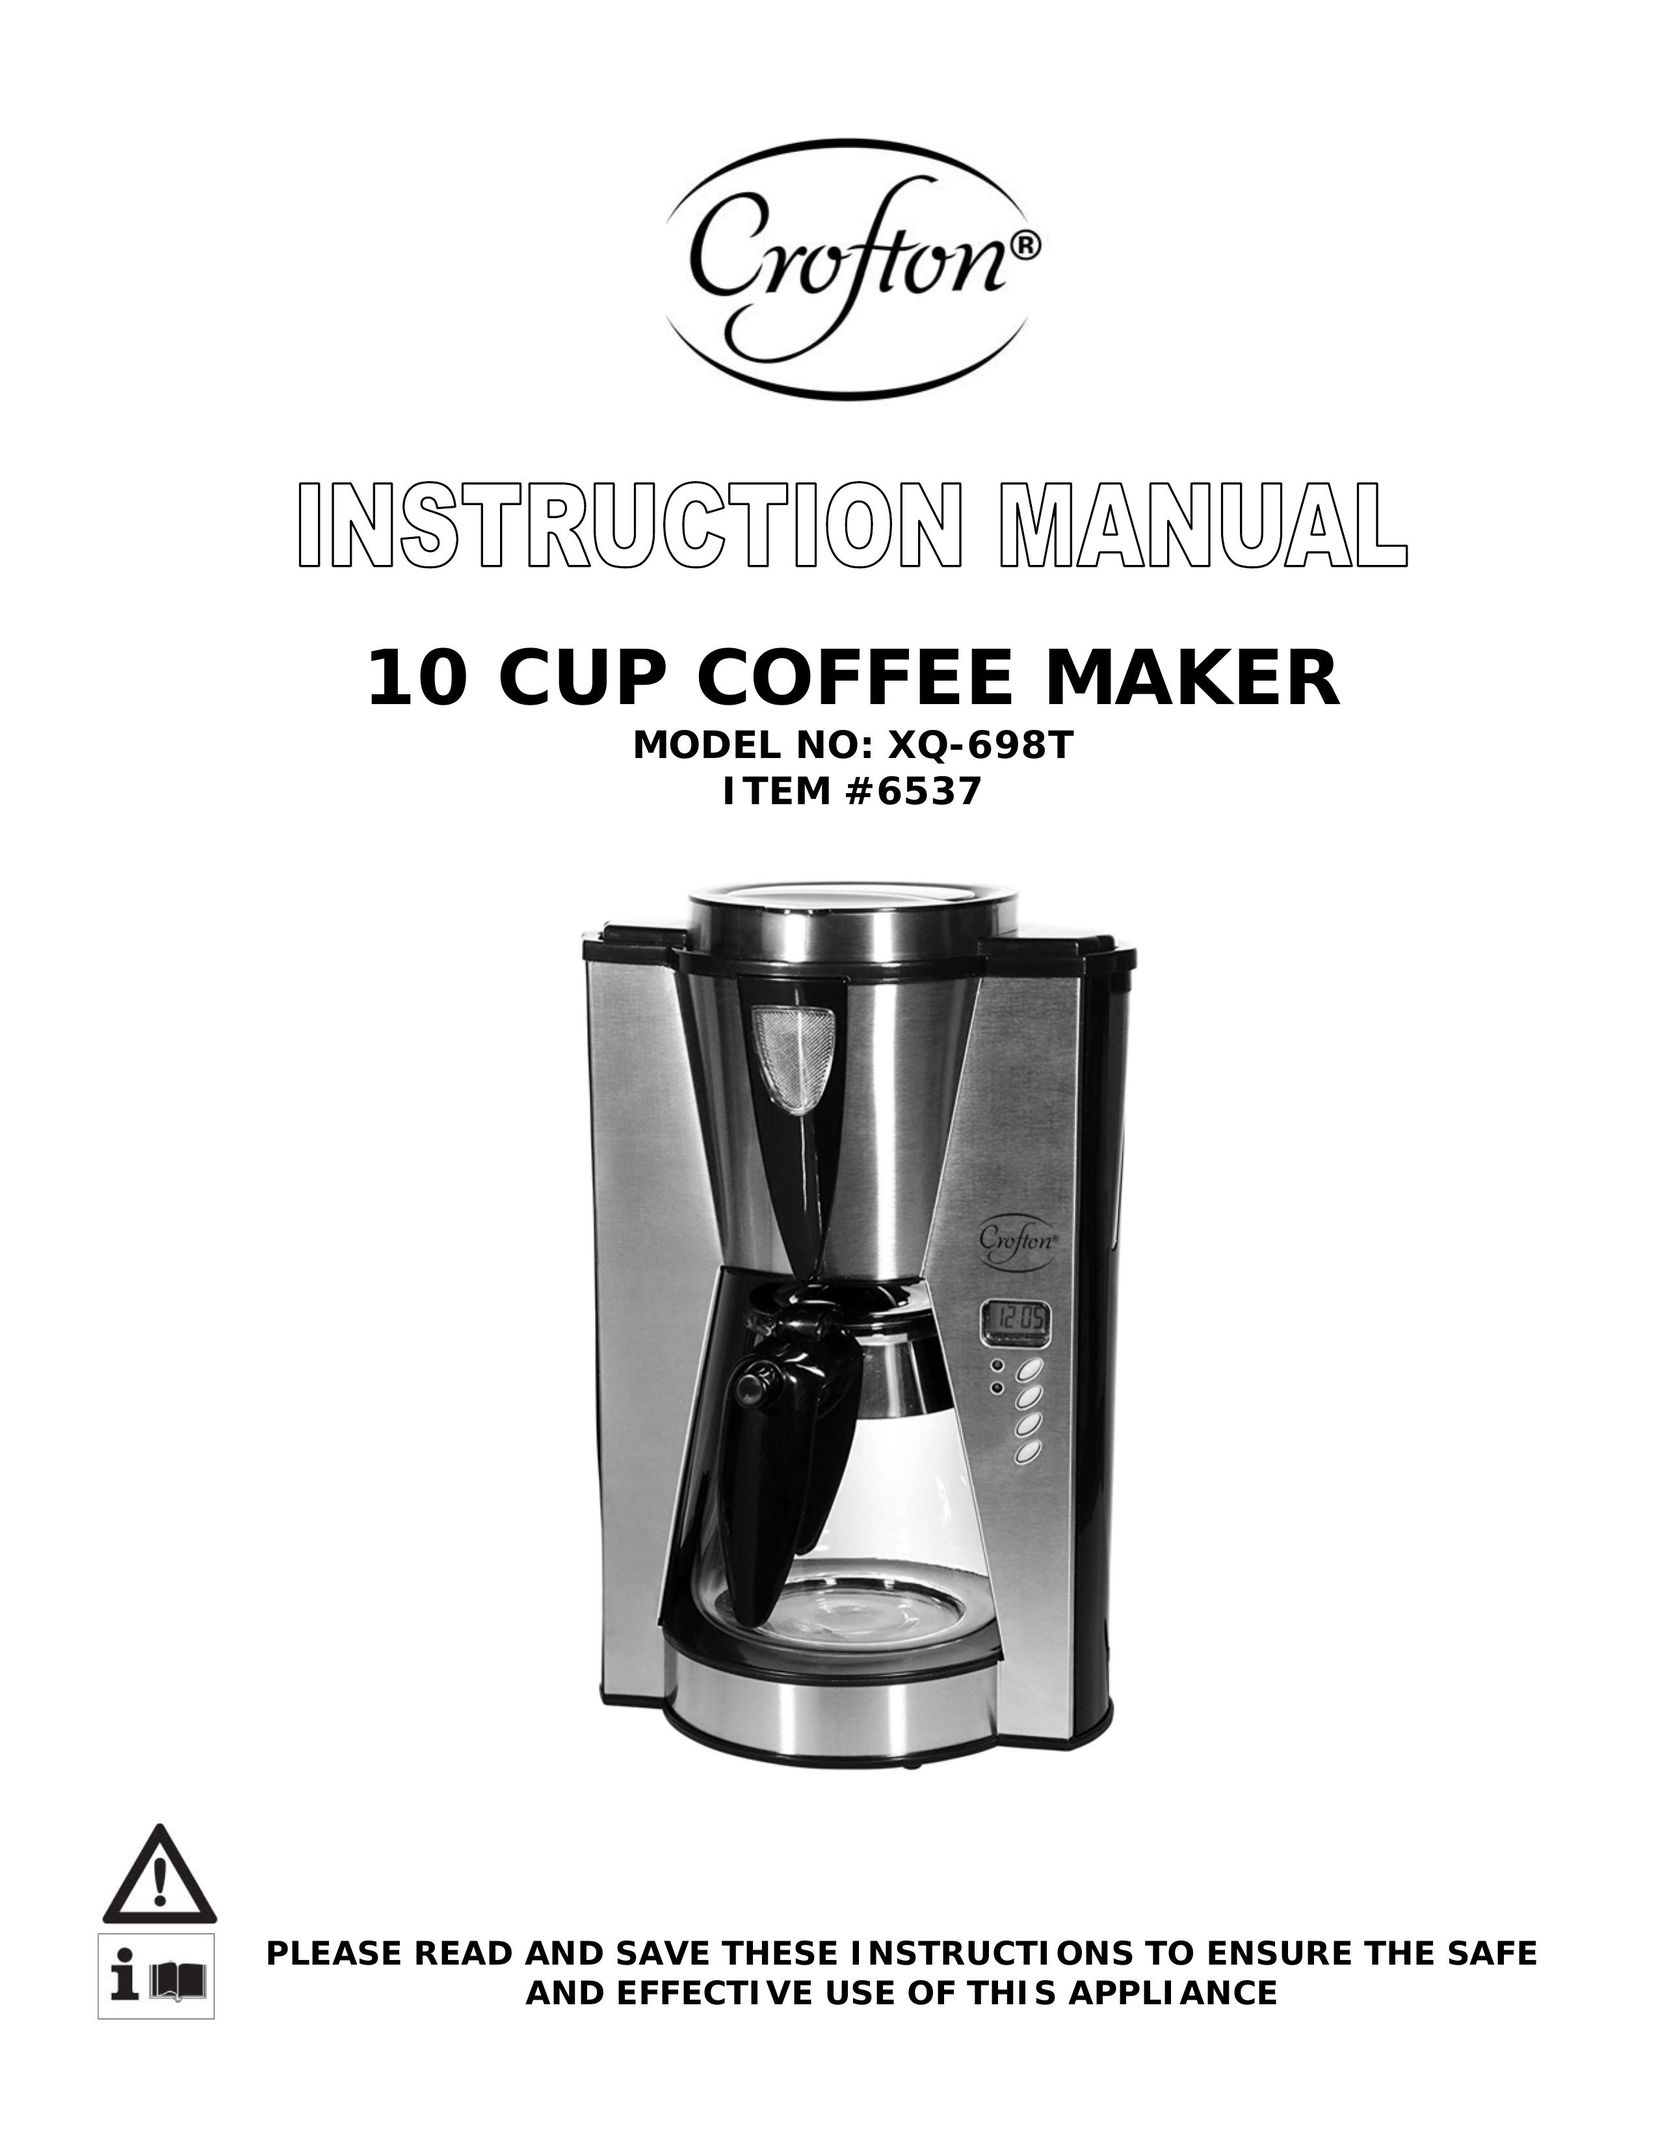 Wachsmuth & Krogmann XQ-698T Coffeemaker User Manual